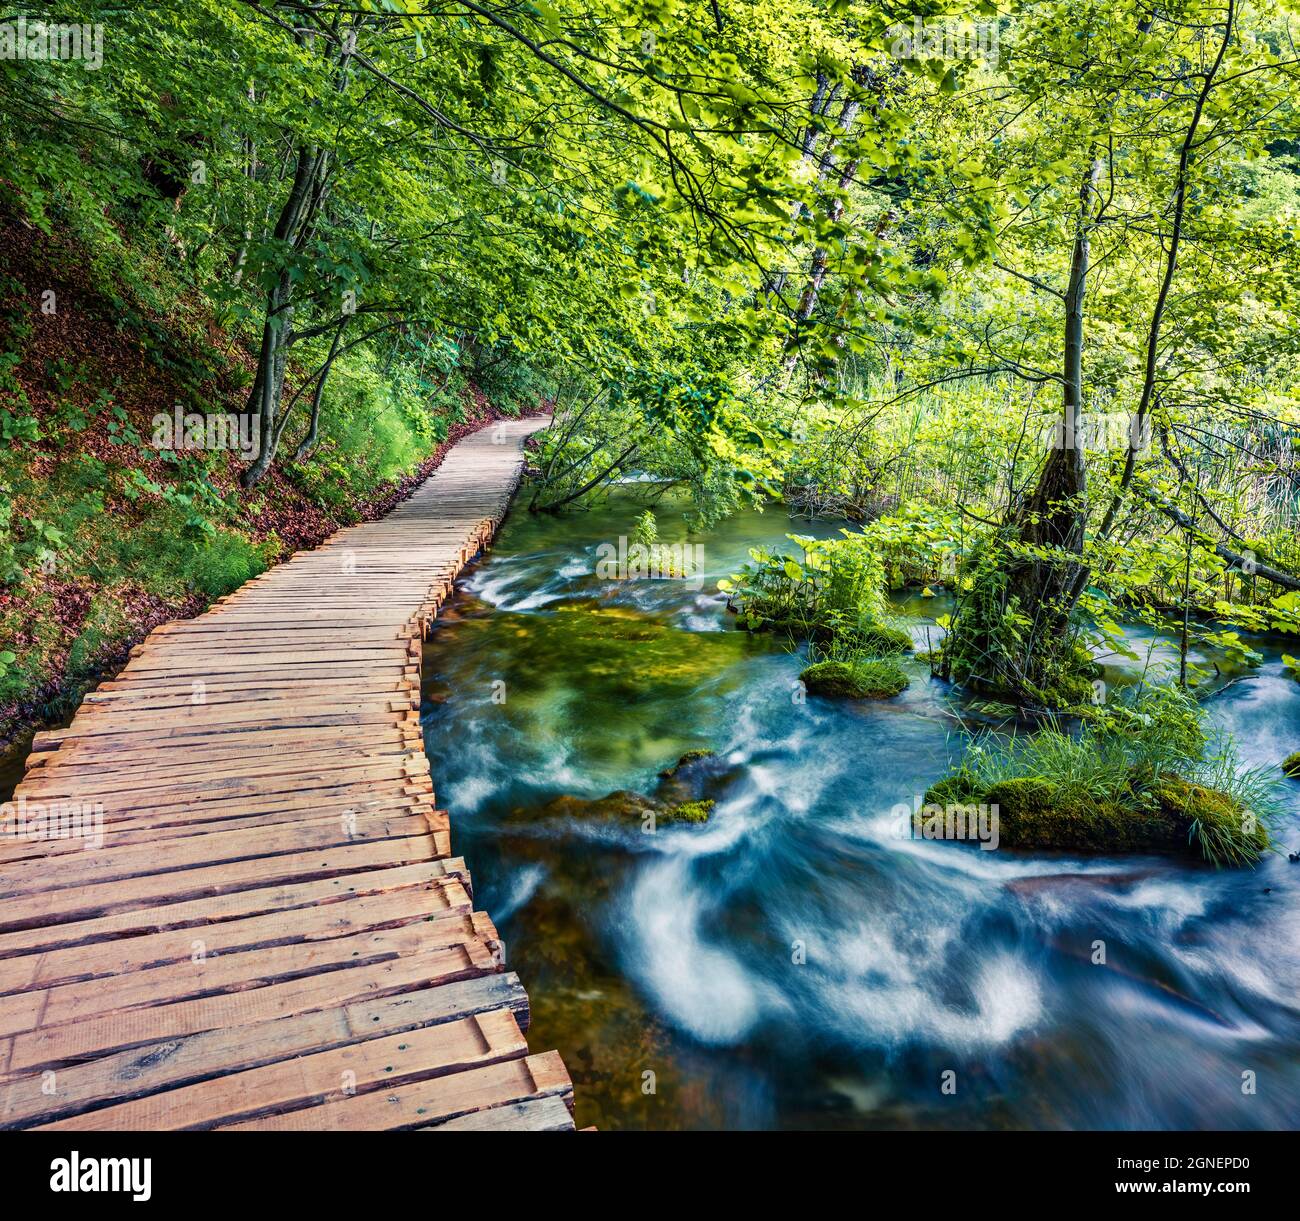 Splendida vista mattutina del Parco Nazionale di Plitvice. Fresca scena primaverile di foresta verde con fiume d'acqua pura. Splendido paesaggio di campagna della Croazia, Foto Stock